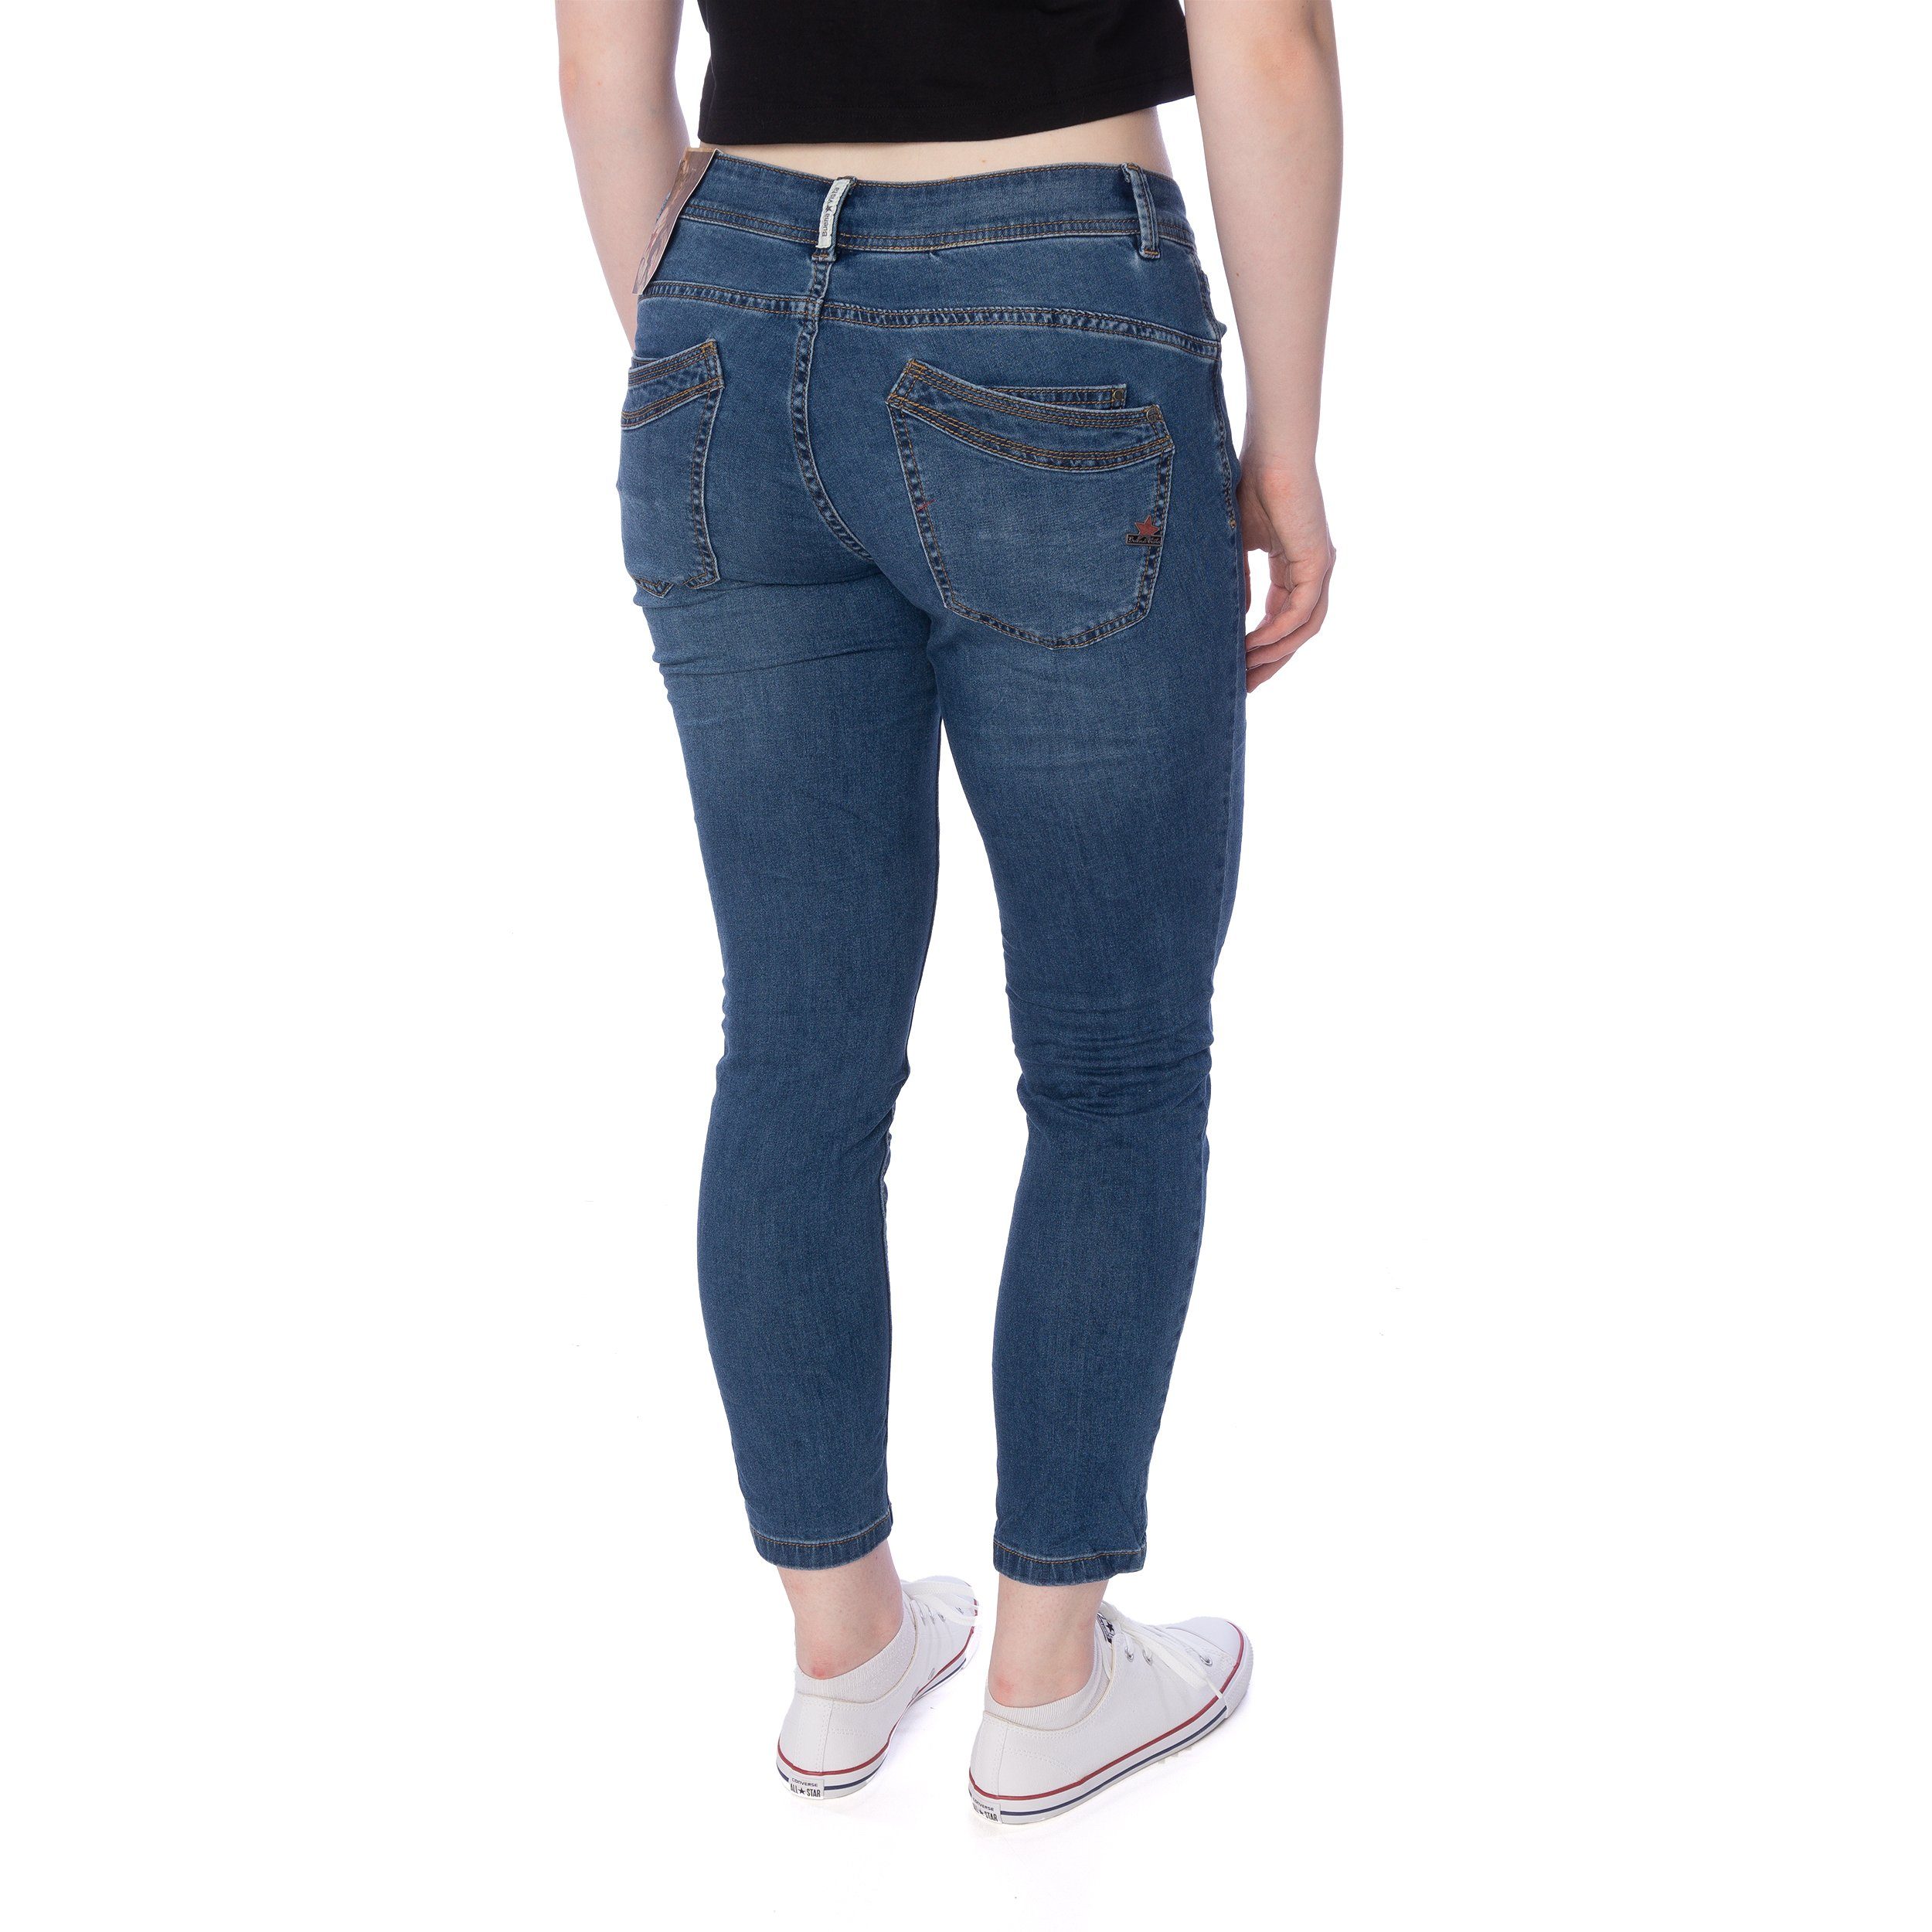 Buena Vista Slim-fit-Jeans Buena Vista blau Jeans stretch Hose Malibu 7/8 Damen denim